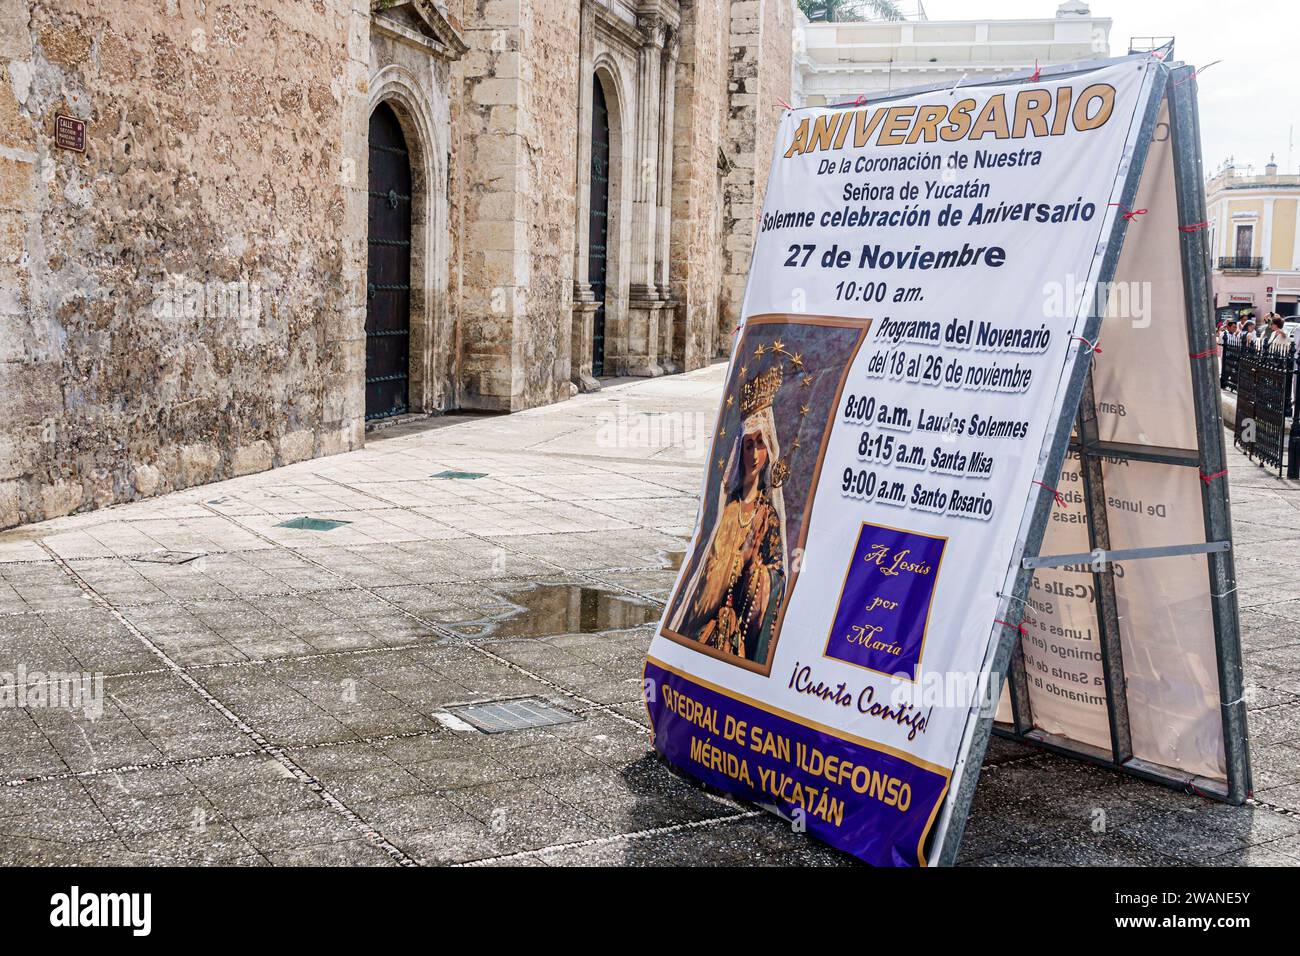 Merida Mexico, Centro Historico Central Historico Central Historico, religiöse Veranstaltung Feier, Schilderinformationen, Werbung Werbung Plakatbanner Stockfoto